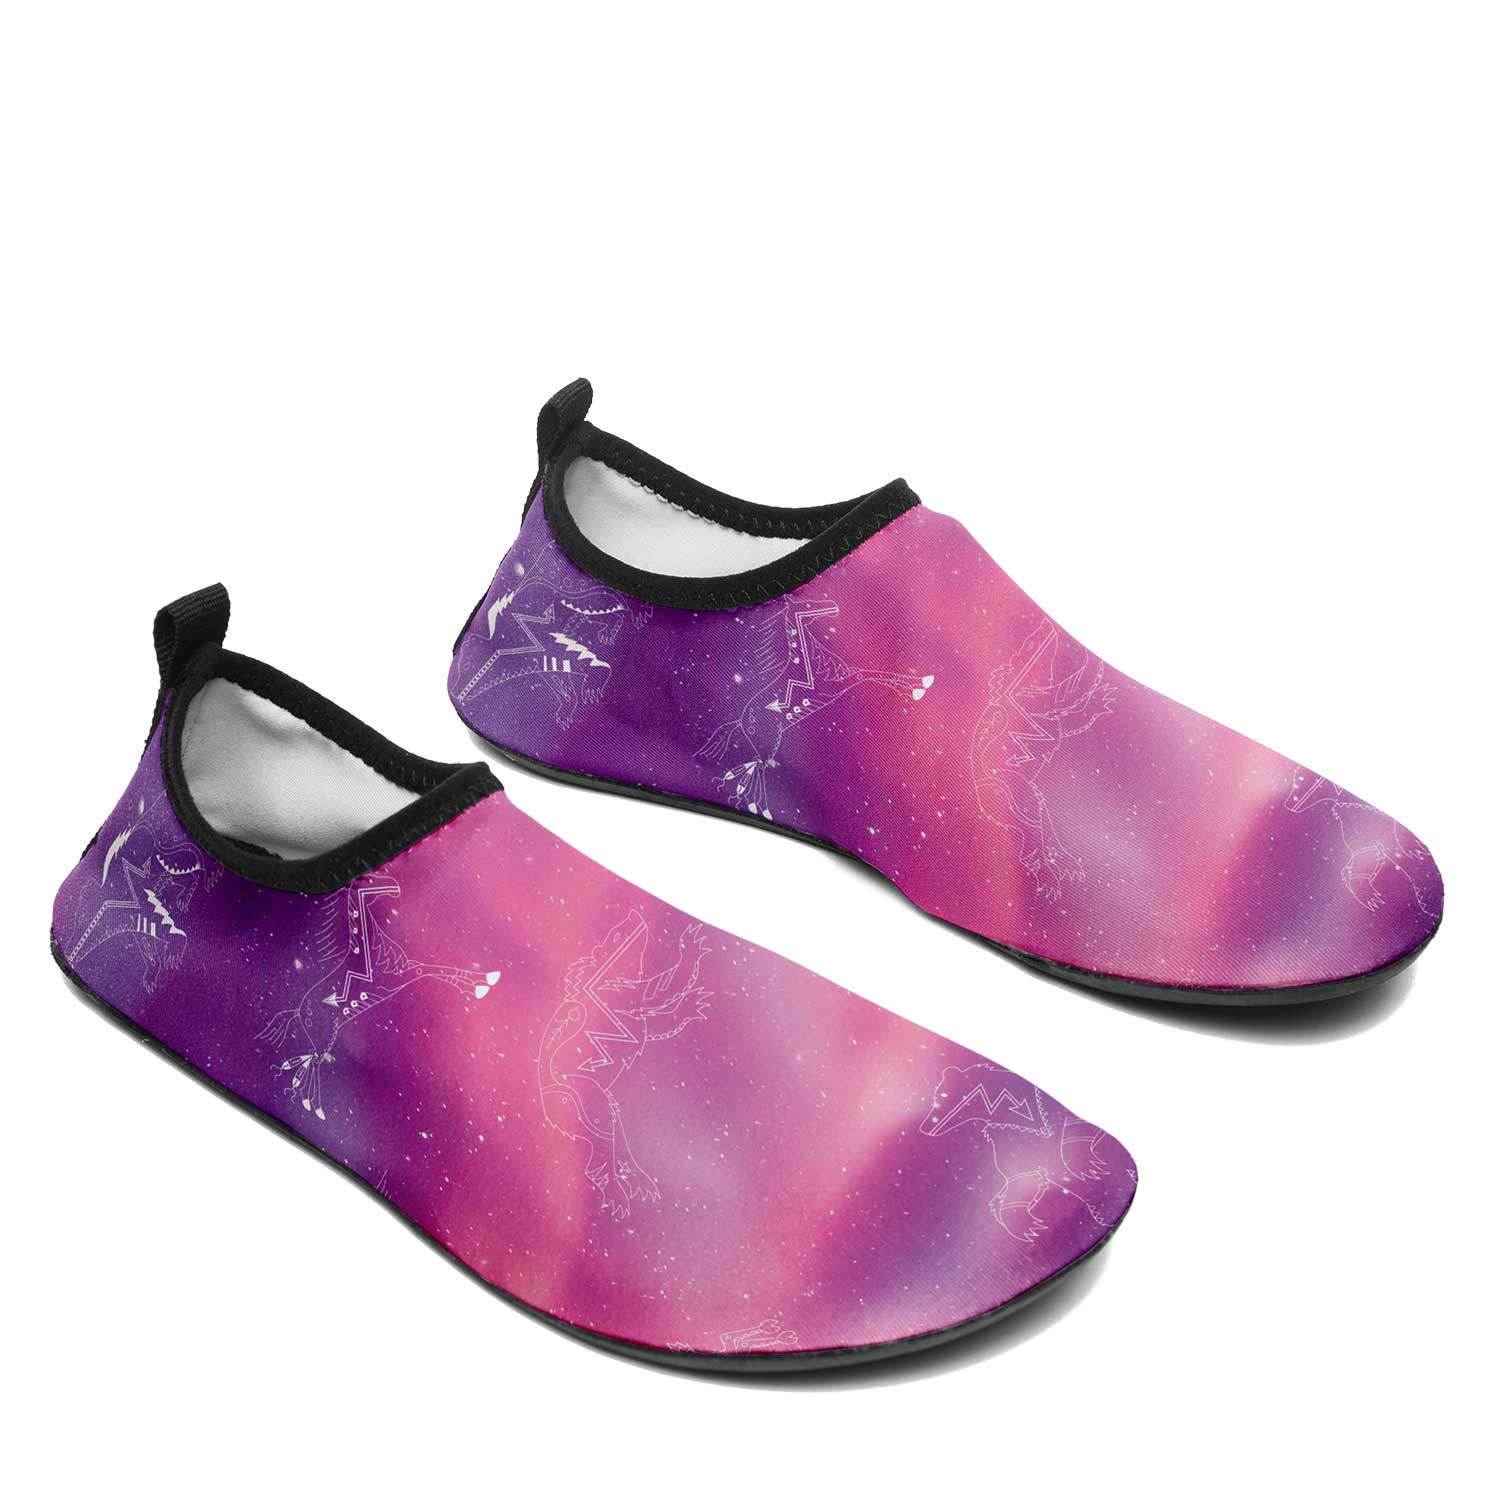 Animal Ancestors 7 Aurora Gases Pink and Purple Kid's Sockamoccs Slip On Shoes